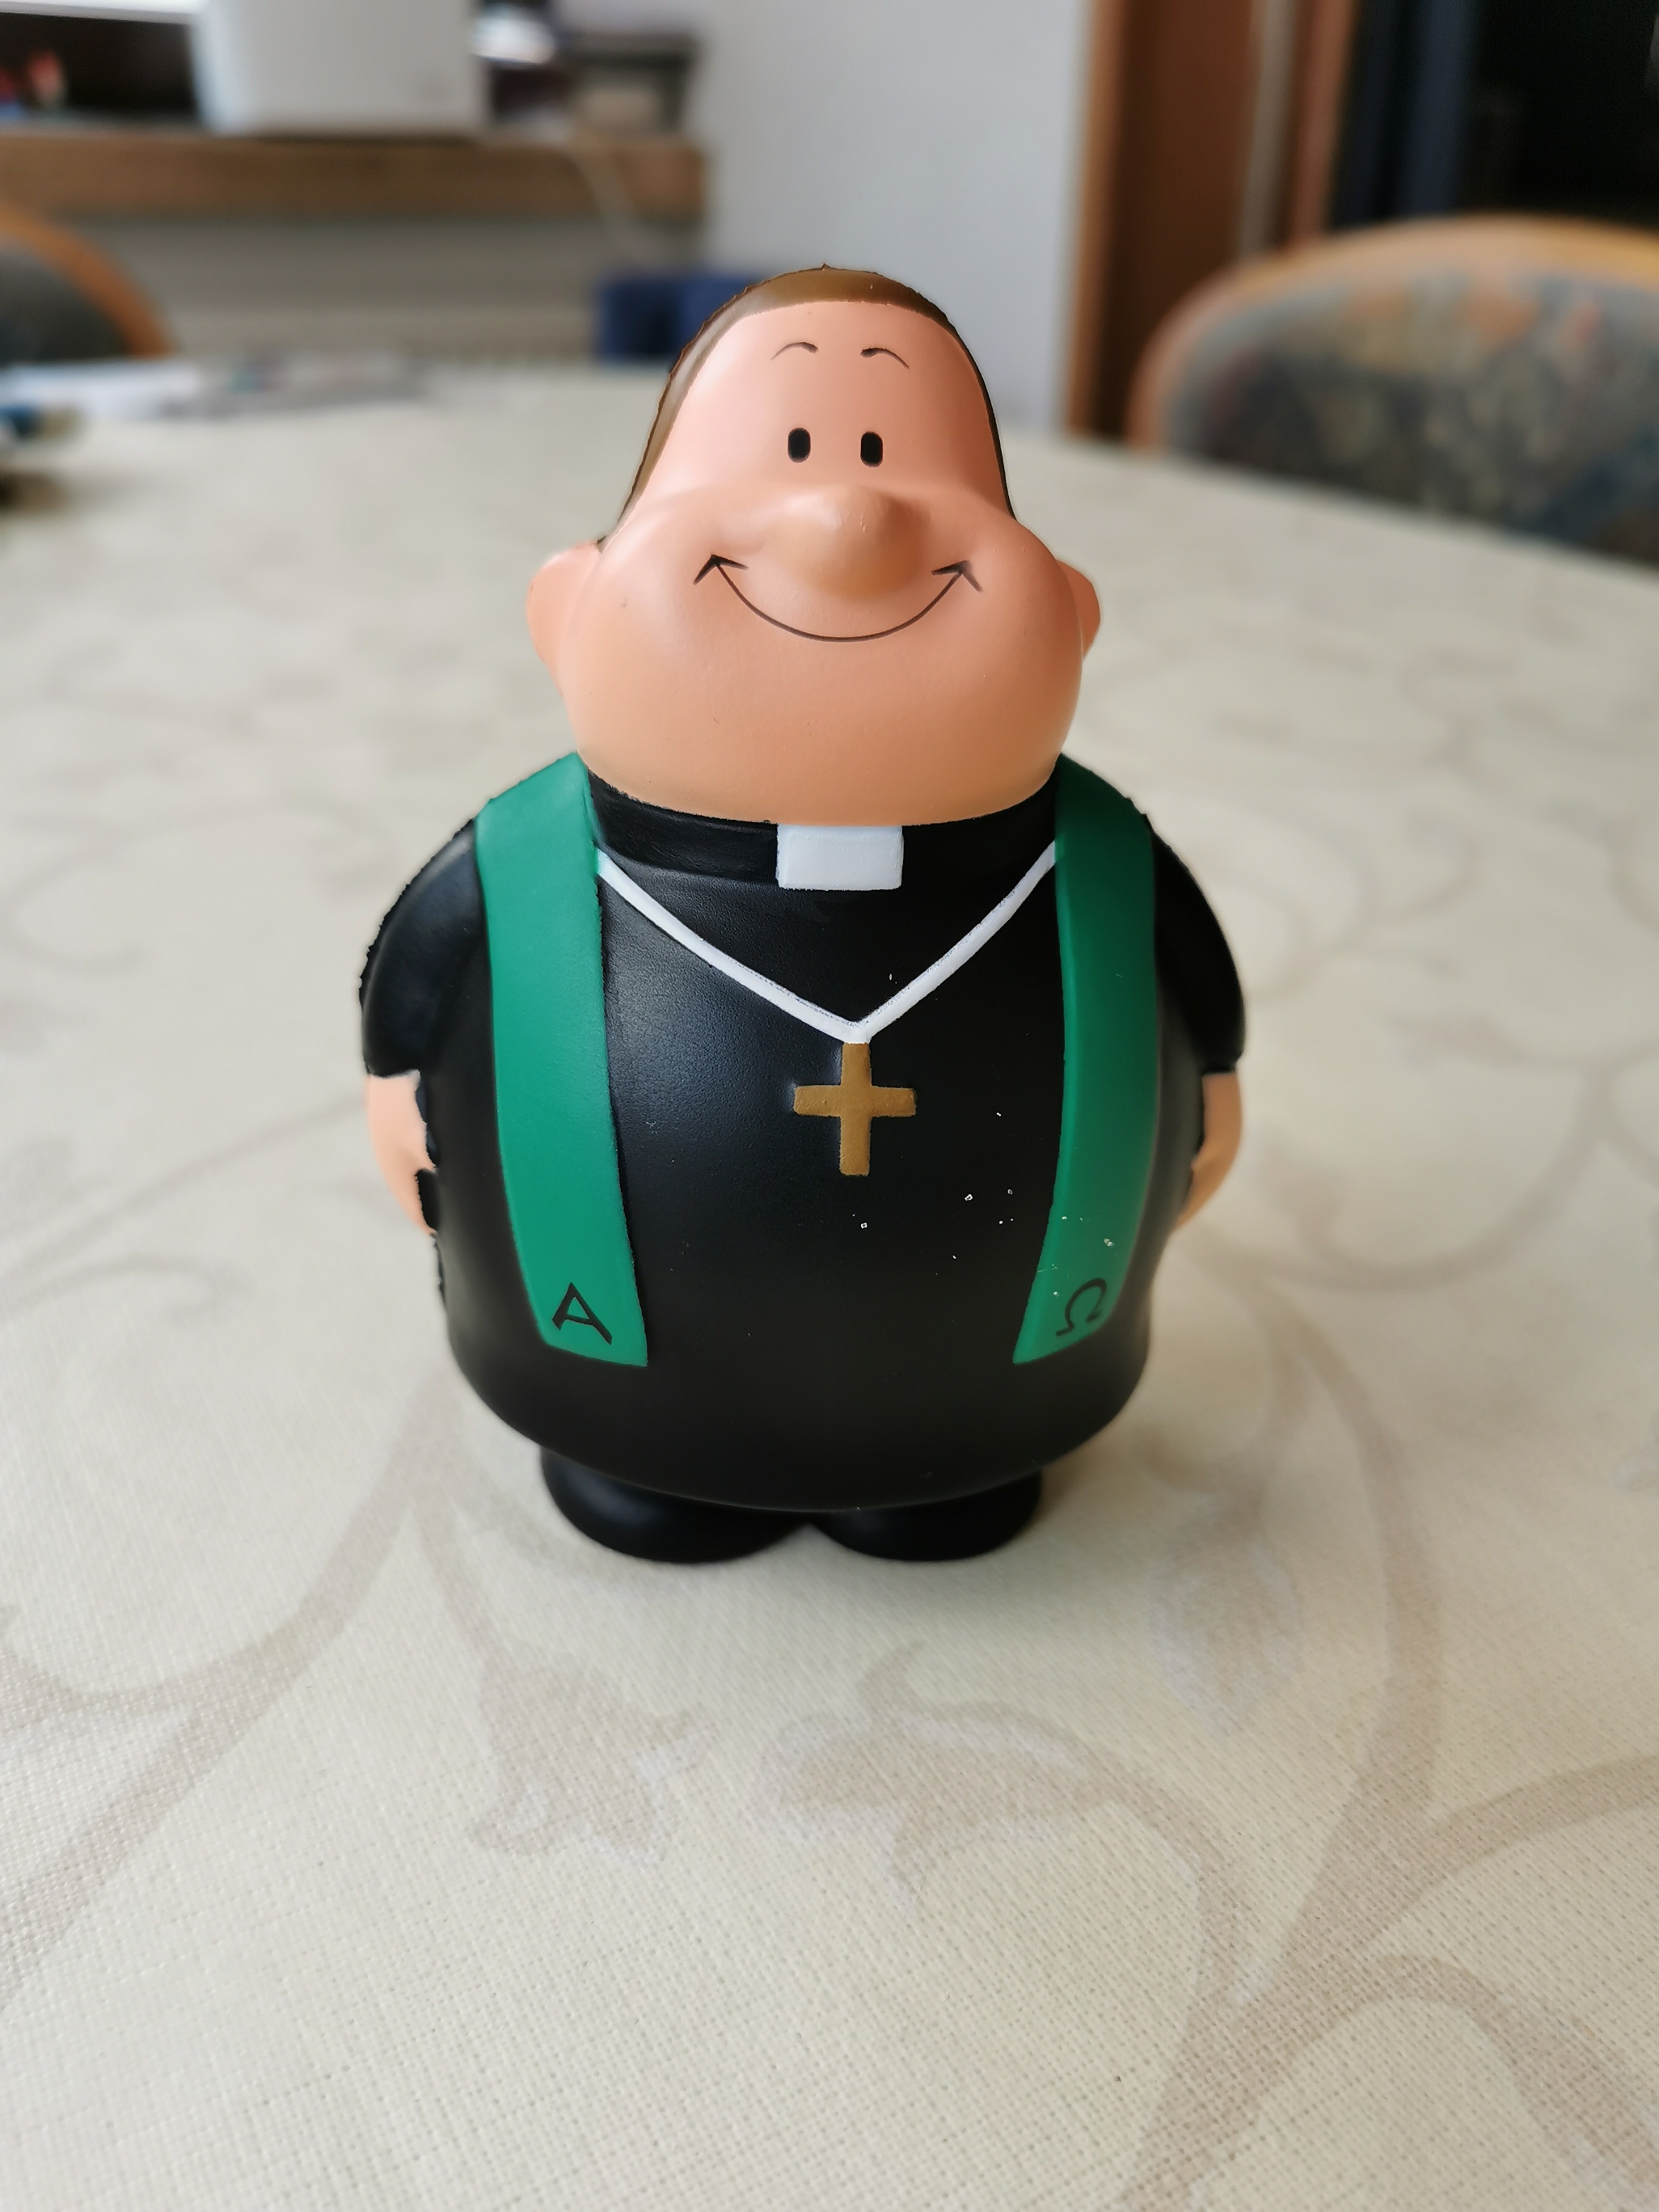 Pastor Bert